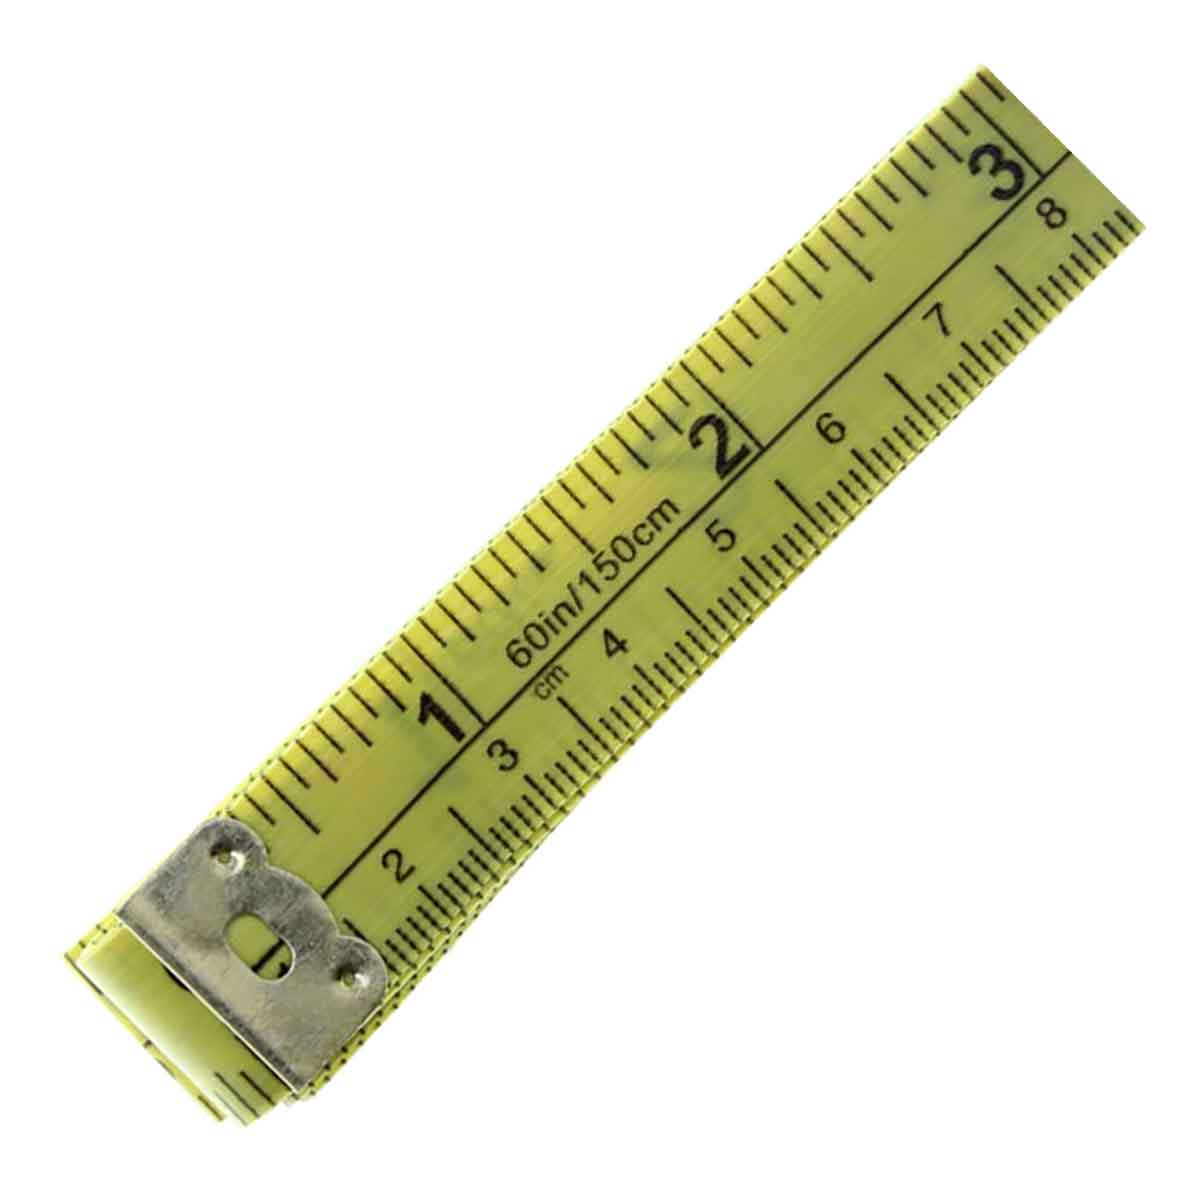 Plastic Tape Measure - 60 inch/150cm